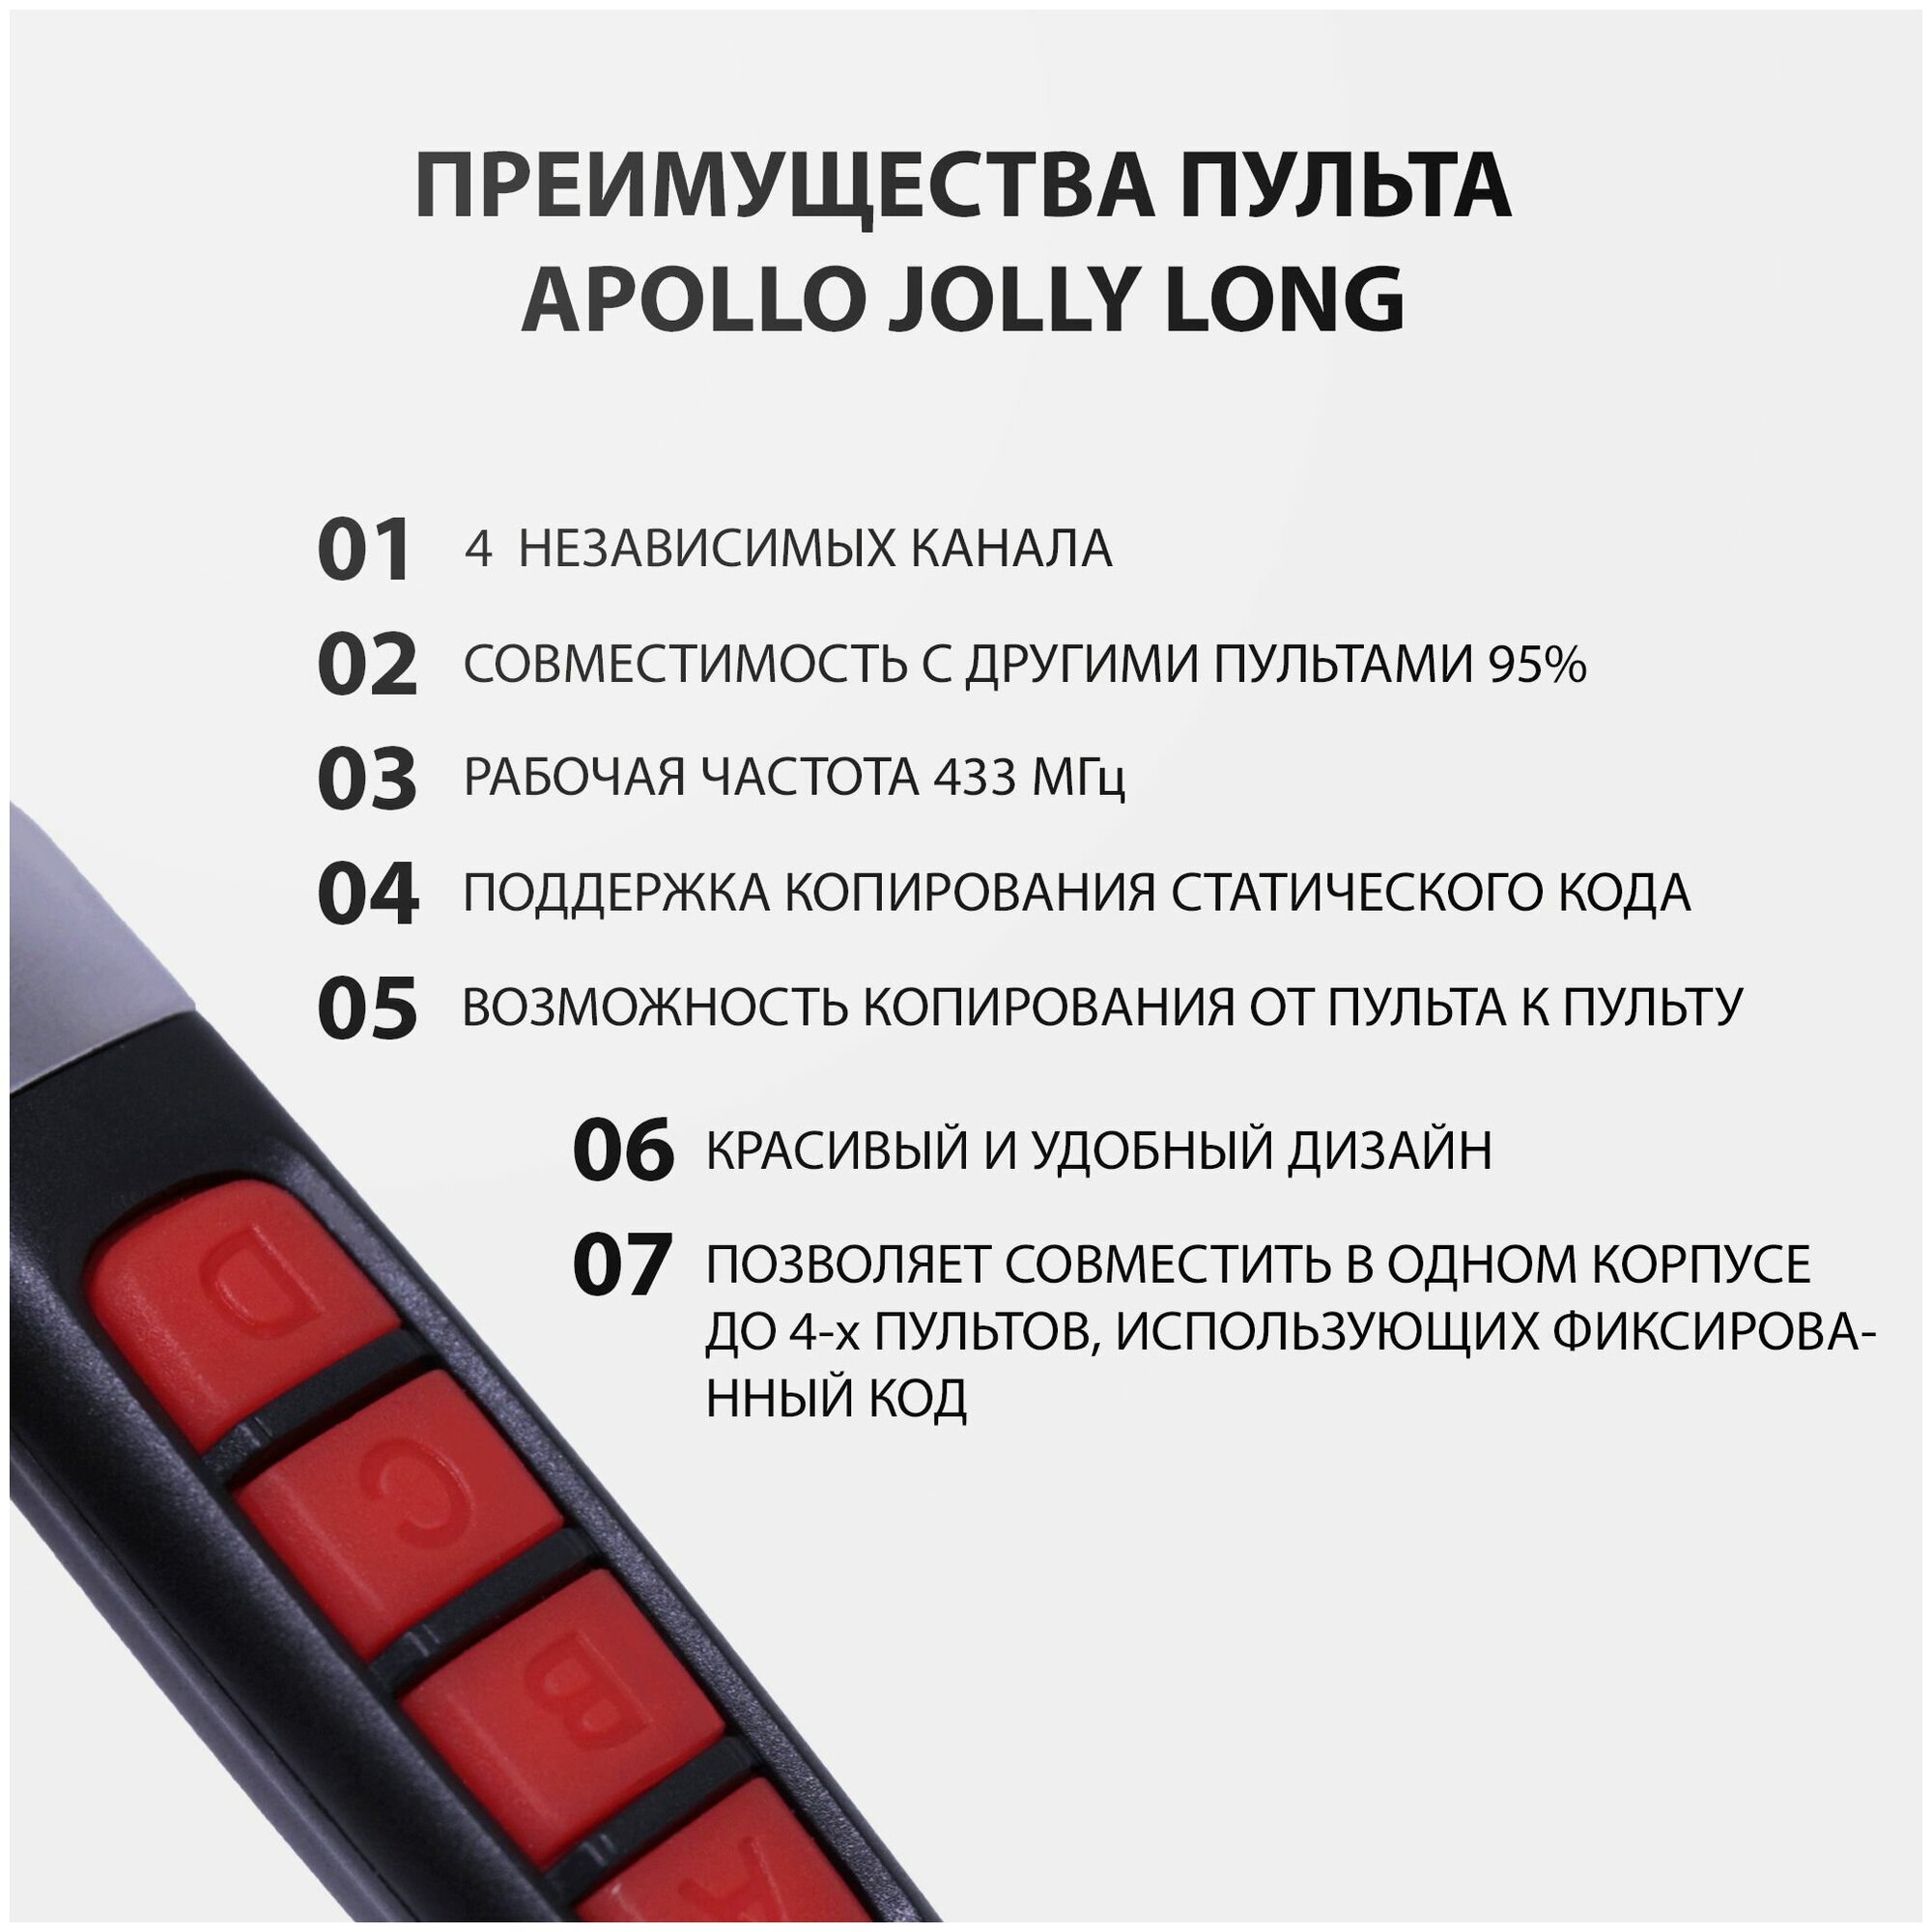 Пульт Apollo Jolly Long для ворот, шлагбаумов, роллет и маркиз. Универсальный, четырехканальный. Частота 433 МГц